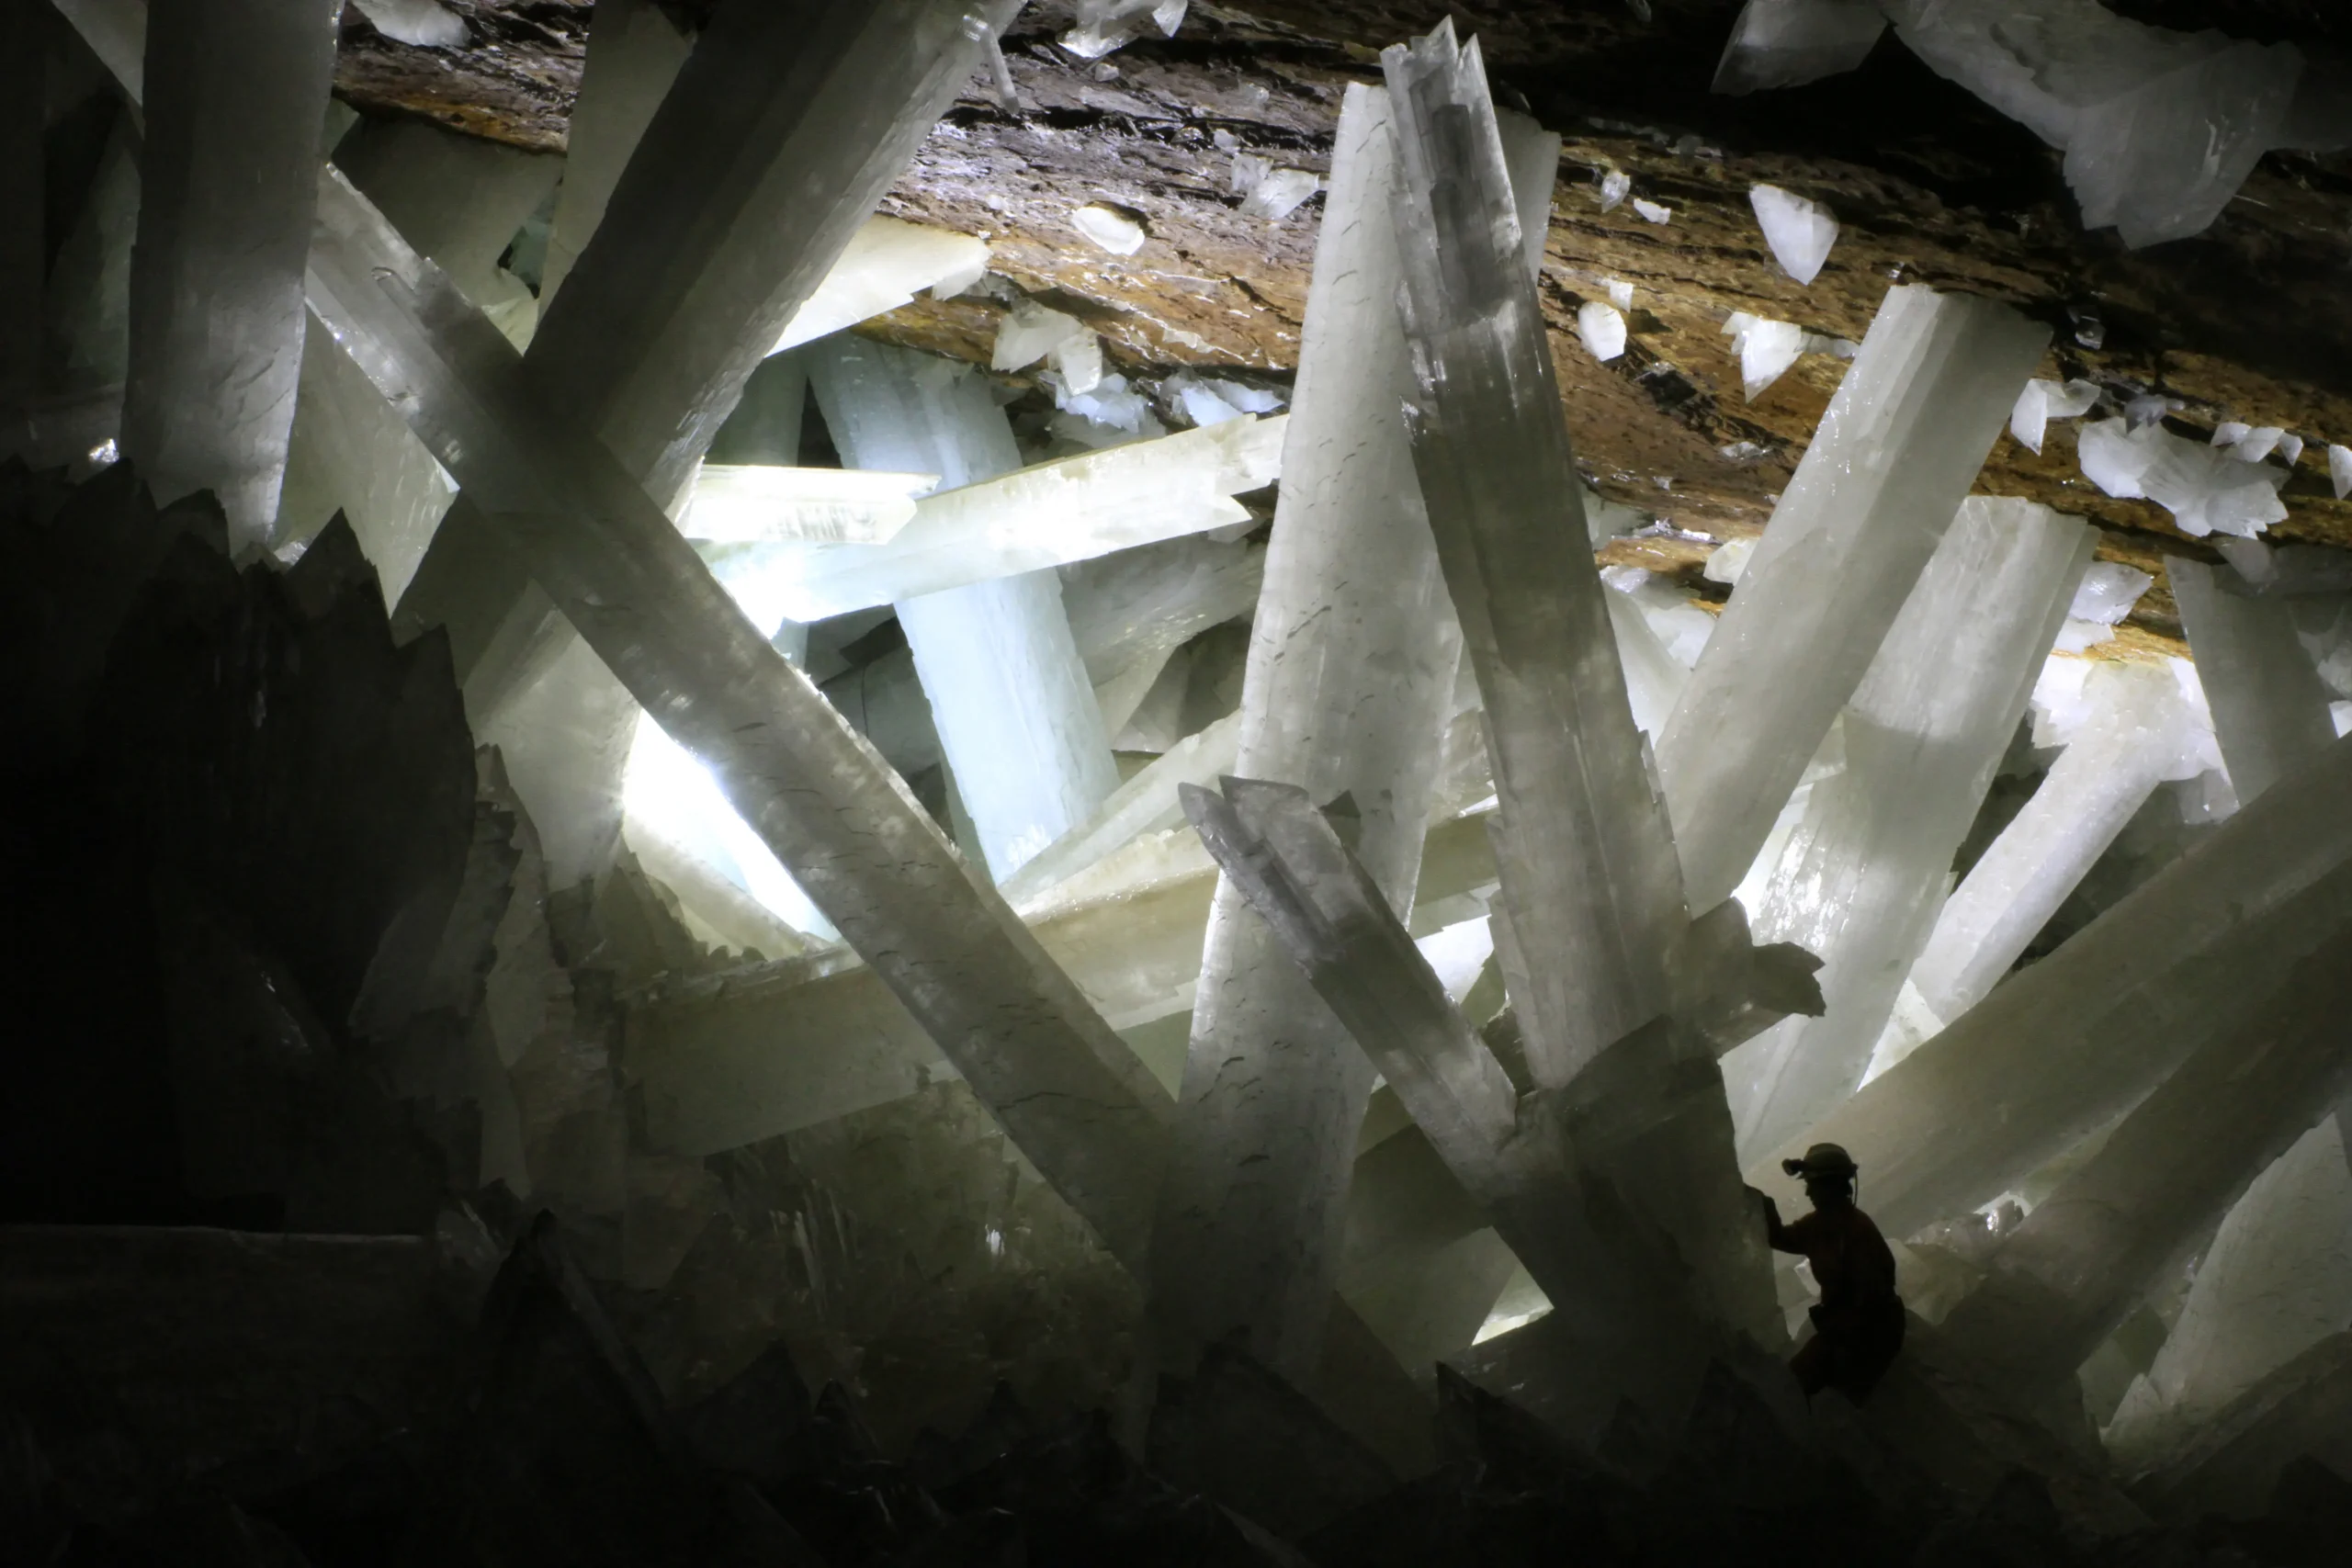 cristales de cuarzo gigantes - Cuál es el cristal más grande del mundo